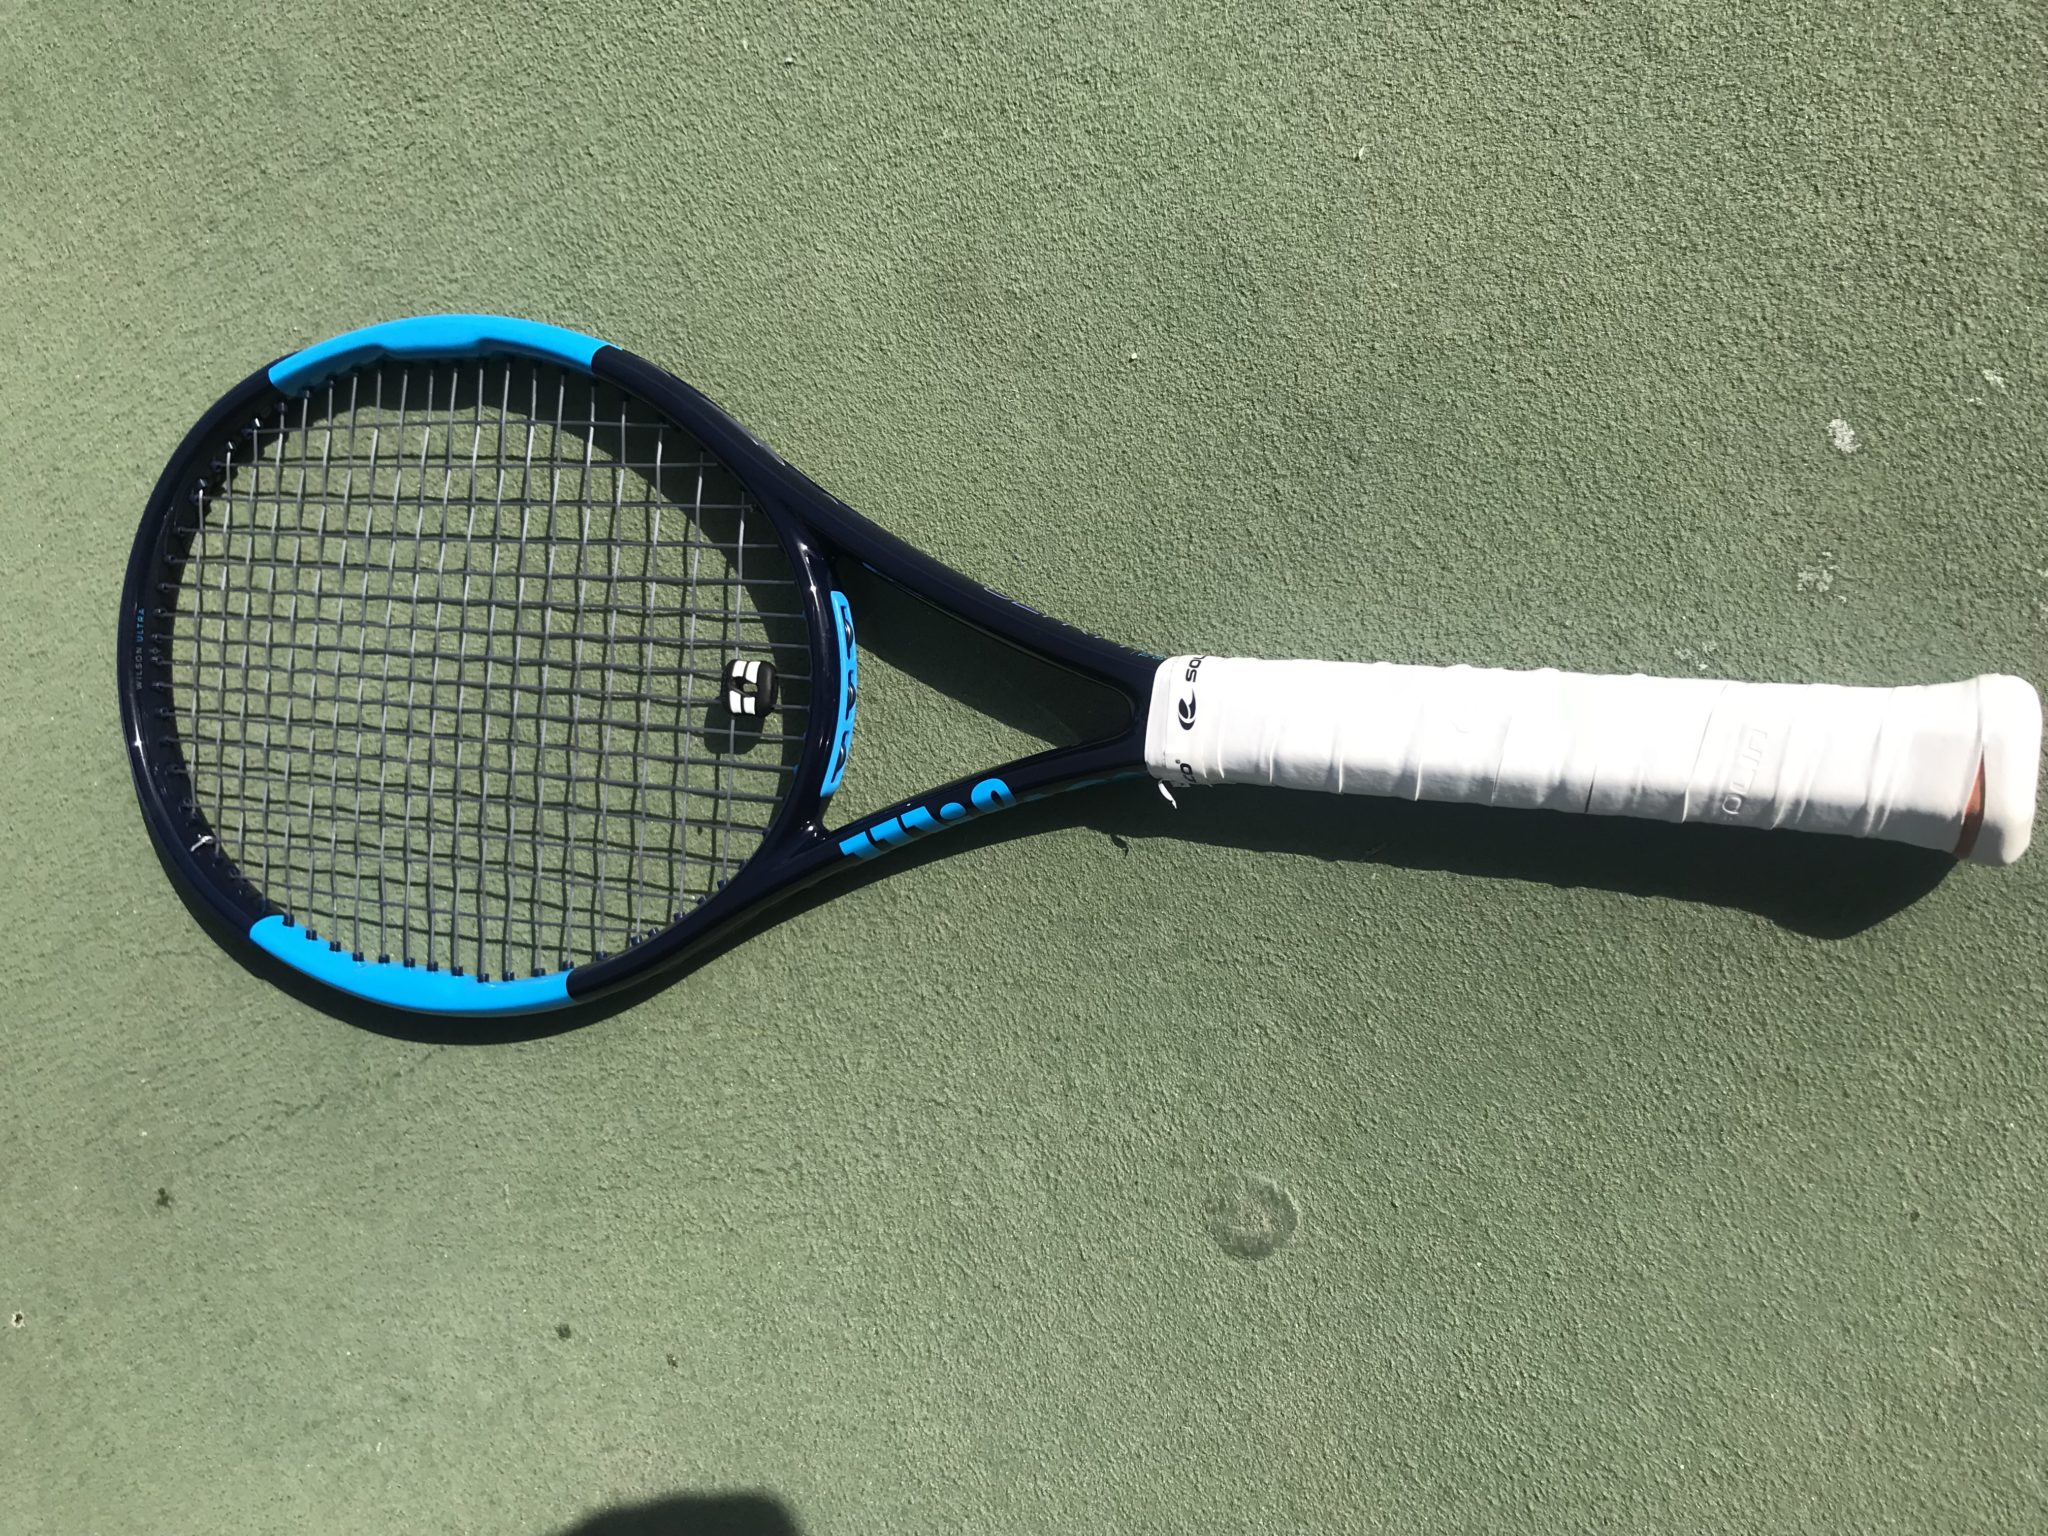 Wilson Ultra Tour 95 CV Racquet Review - The racquet of Kei Nishikori?